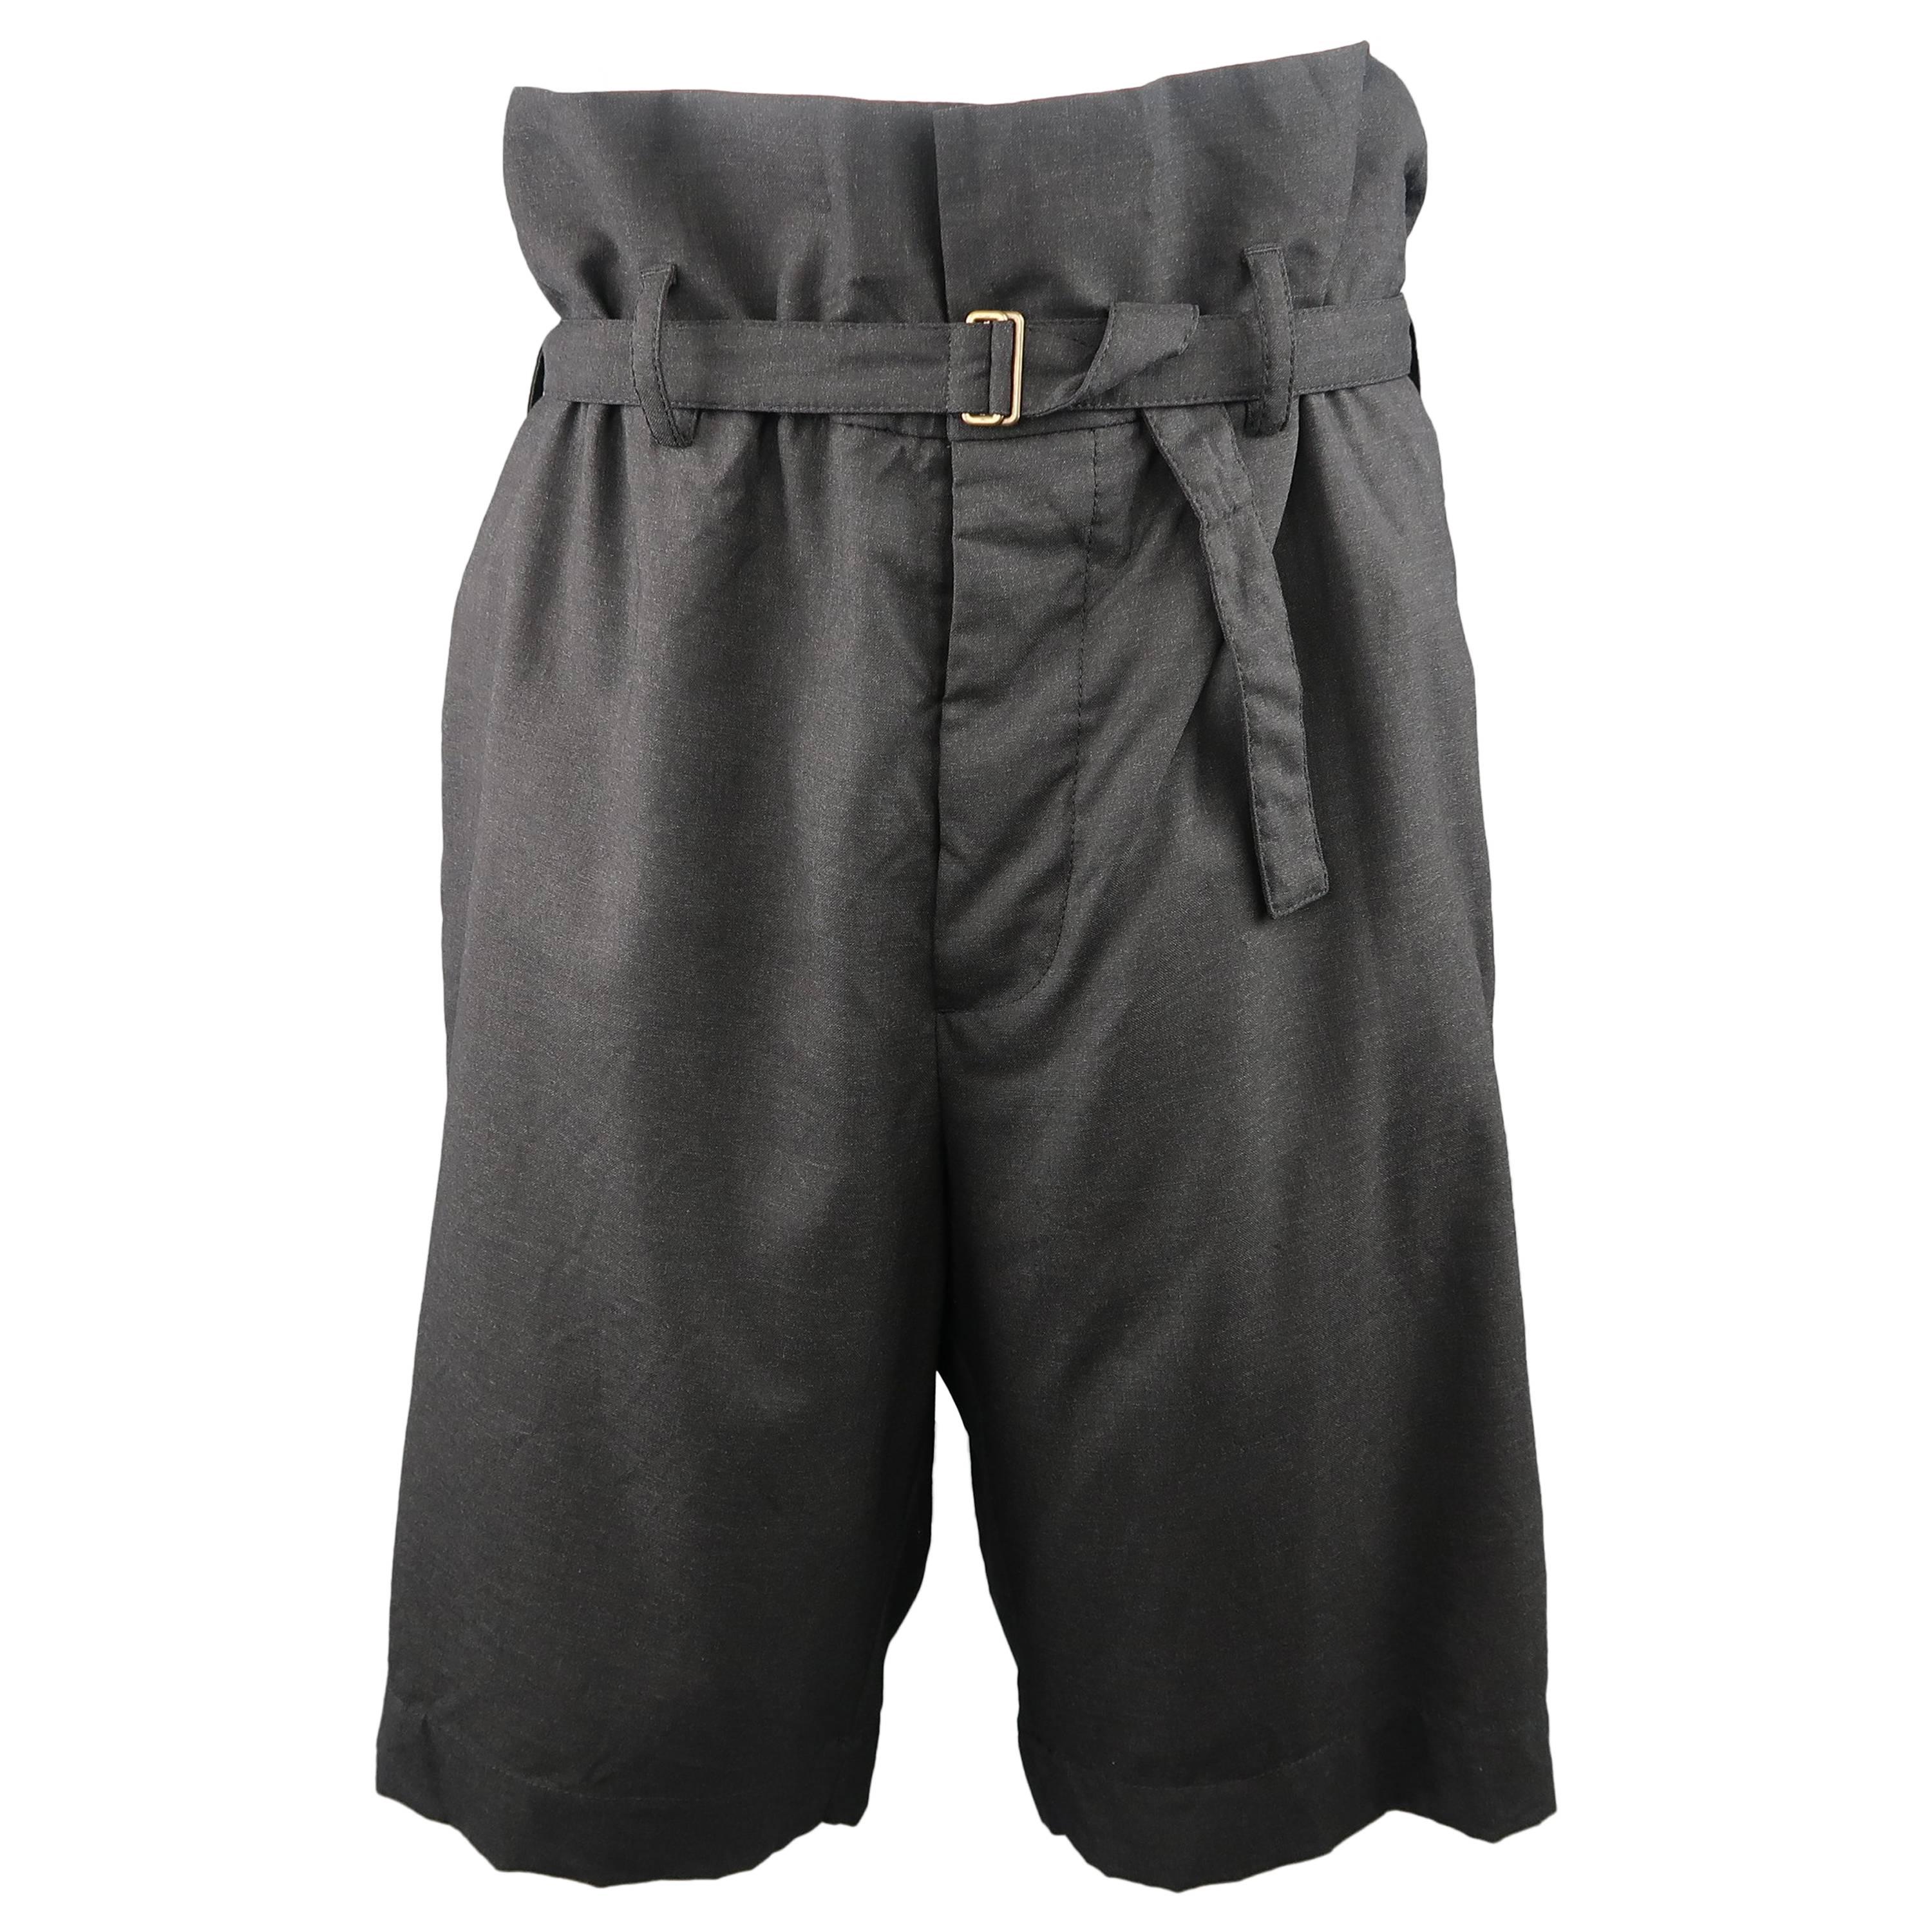 Men's MARNI Size 34 Charcoal Wool Oversized Gathered Waist Drop Crotch Shorts